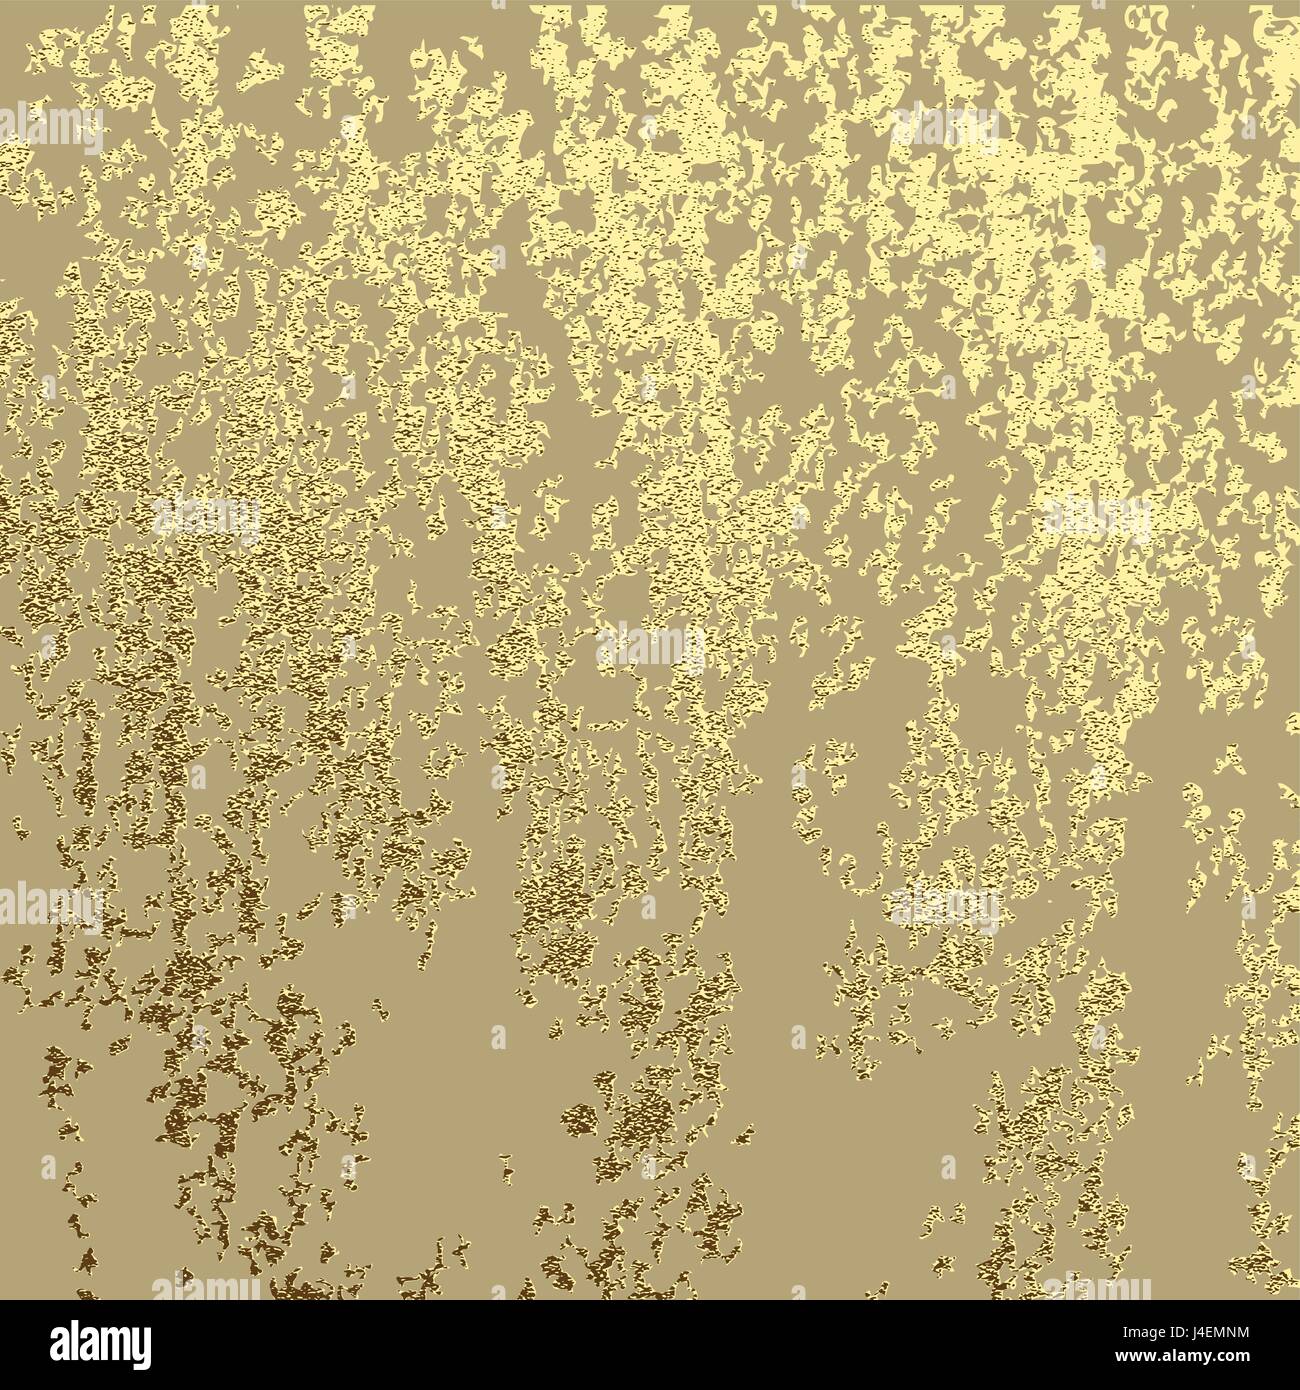 Goldene Grunge-Textur für die Erstellung von Grund auf gold Patina-Effekt. Vektor-illustration Stock Vektor